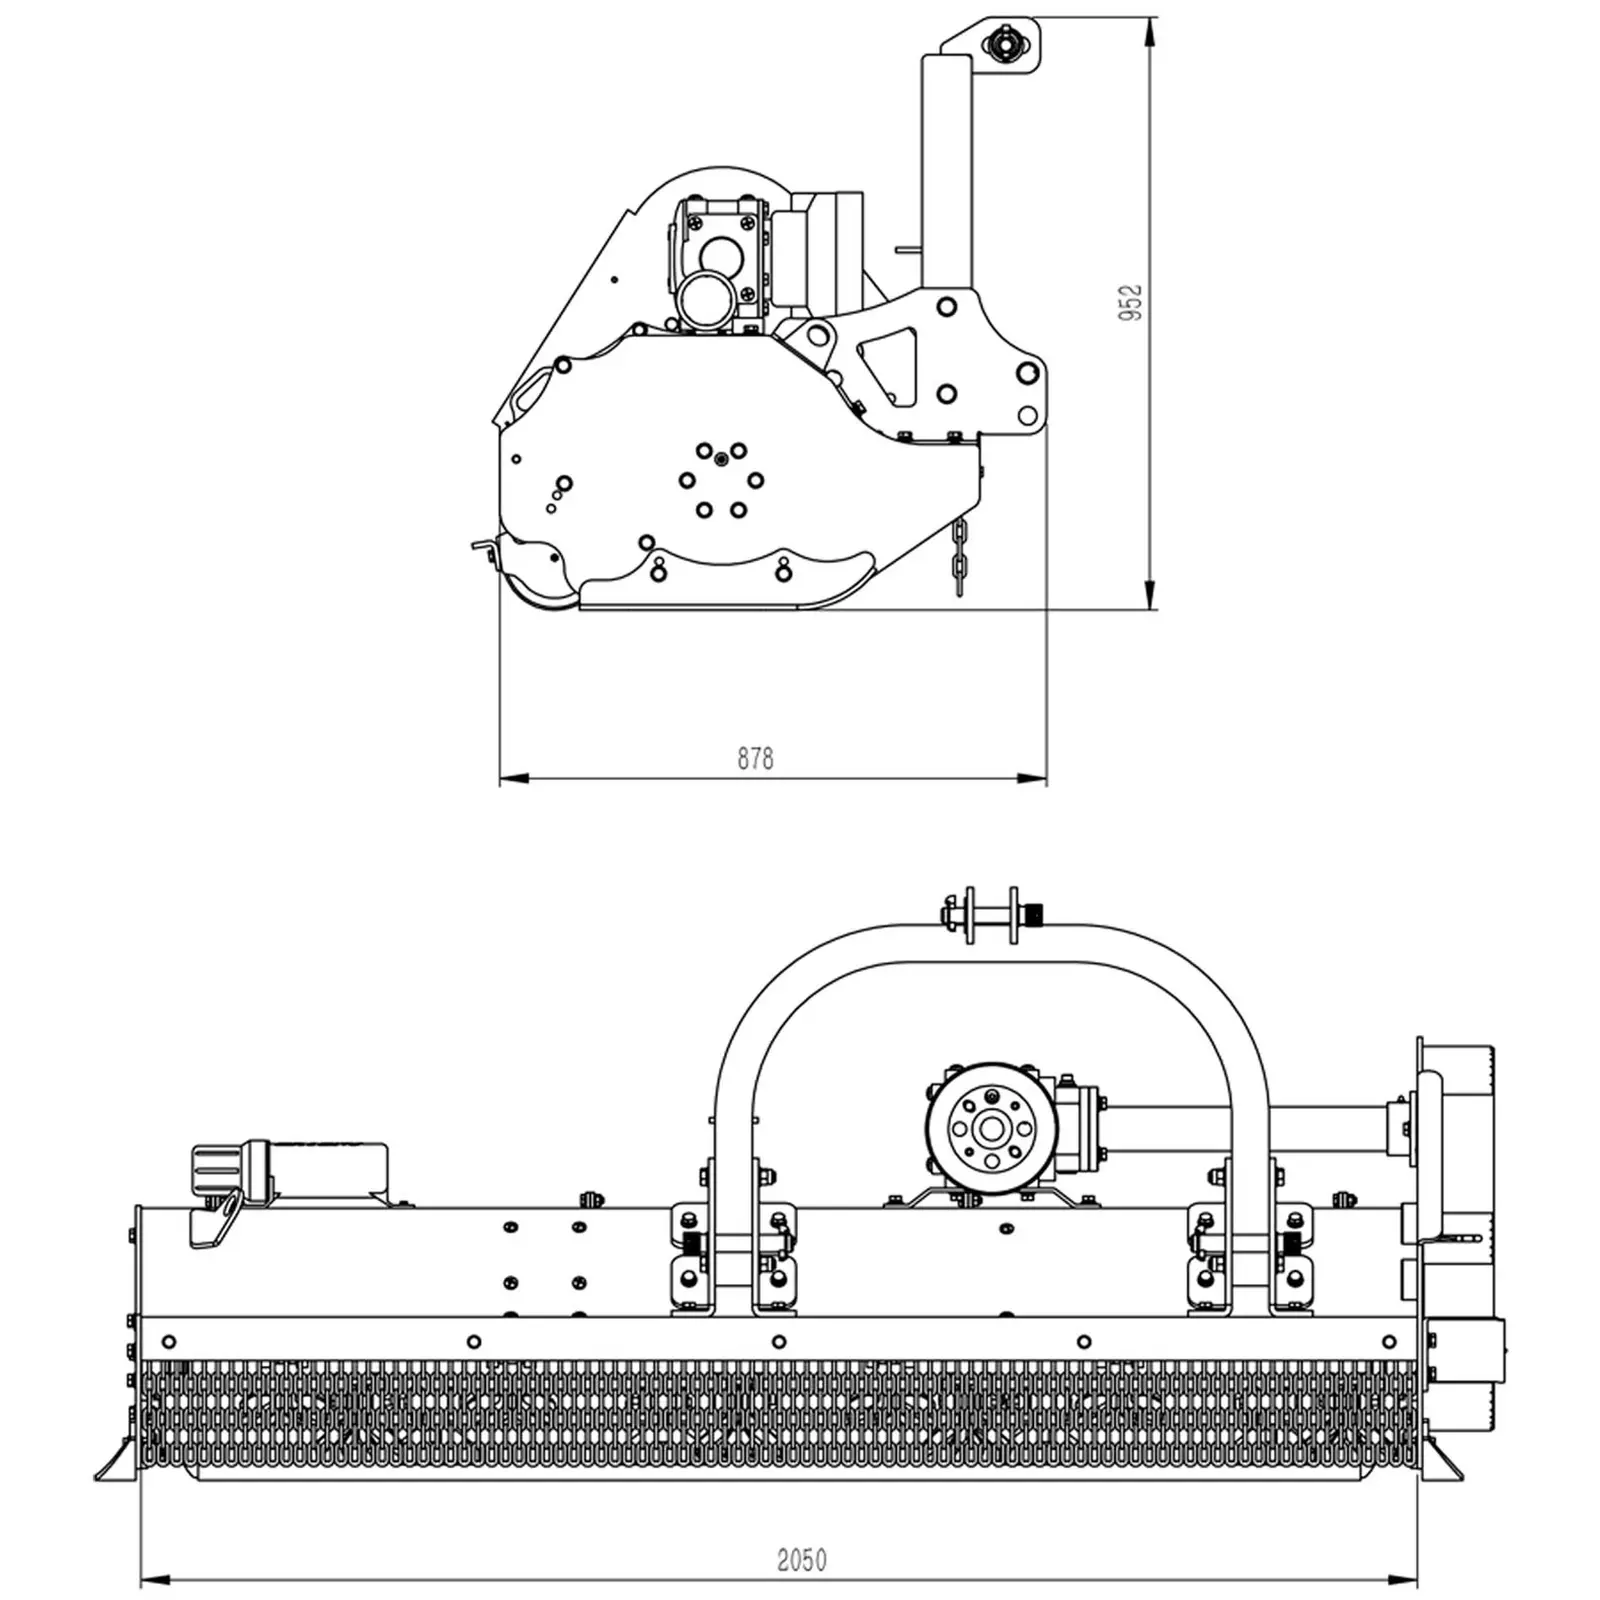 Slaghack - 2000 mm arbetsbredd - Trepunktsupphängning (Kat. II)